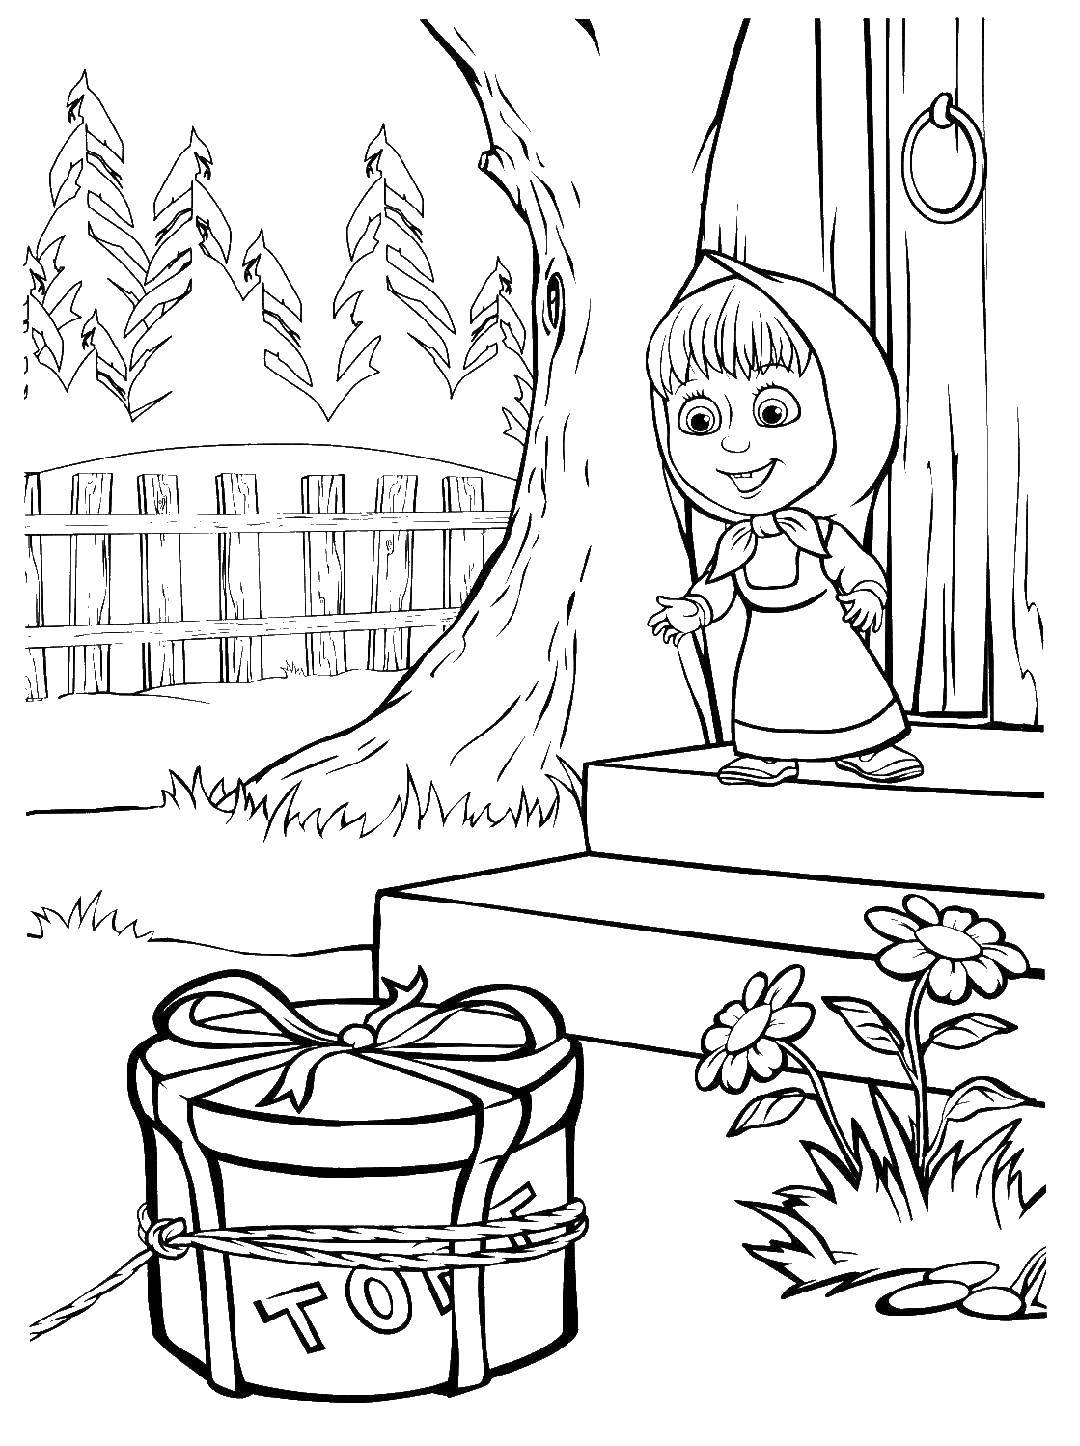 Раскраски для детей про озорную Машу из мультфильма Маша и медведь  Маша бежит за тортом